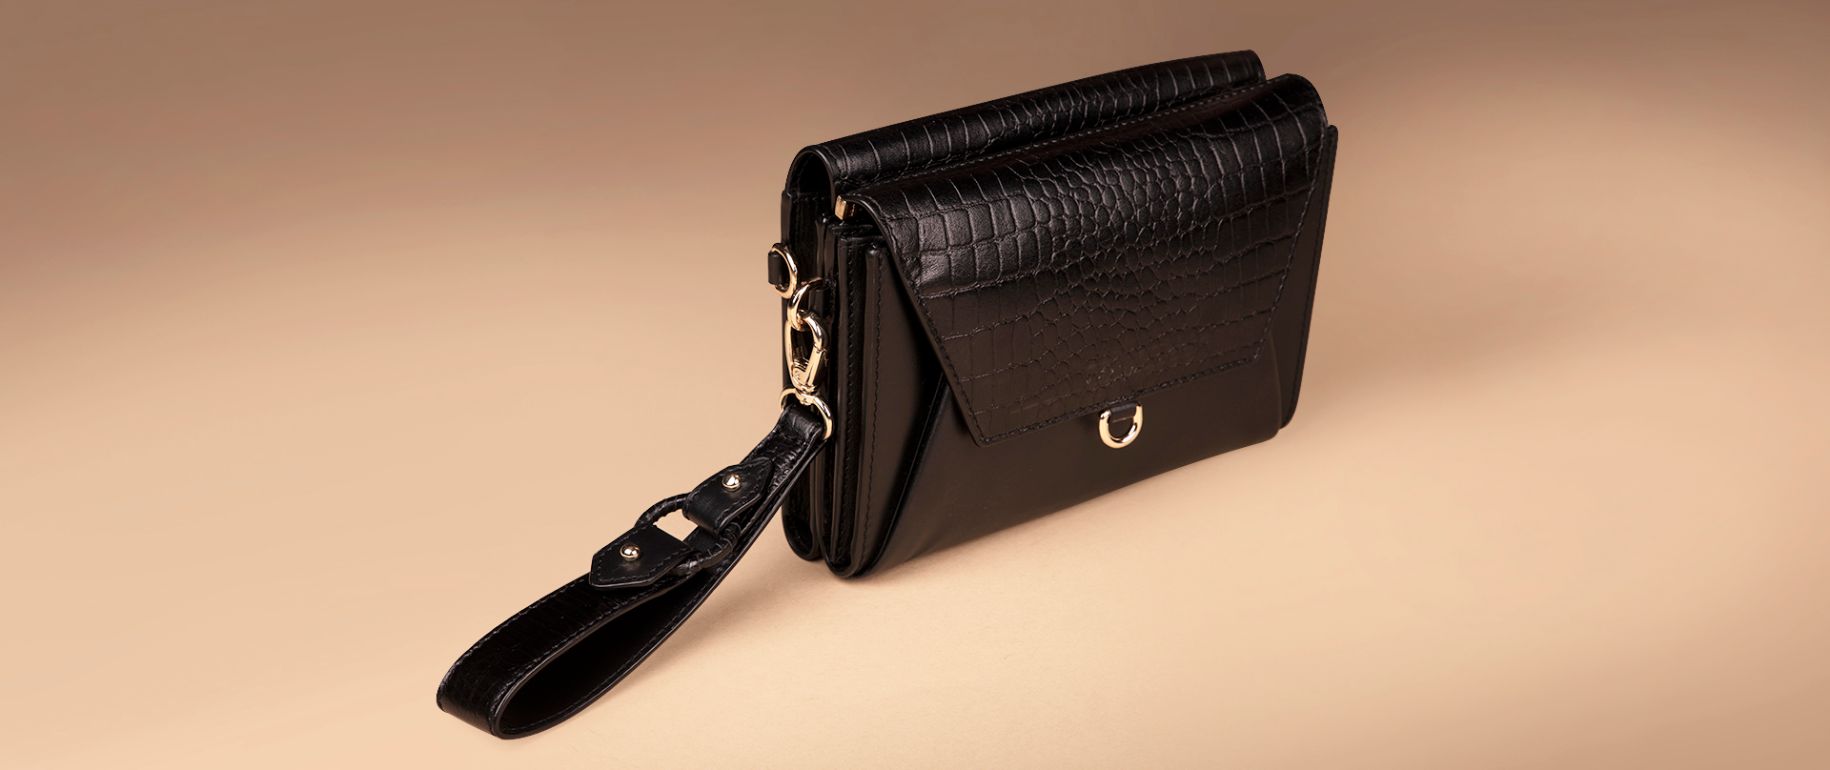 Ember Bag-Clutch-Wallet-Wristlet in Black Leather